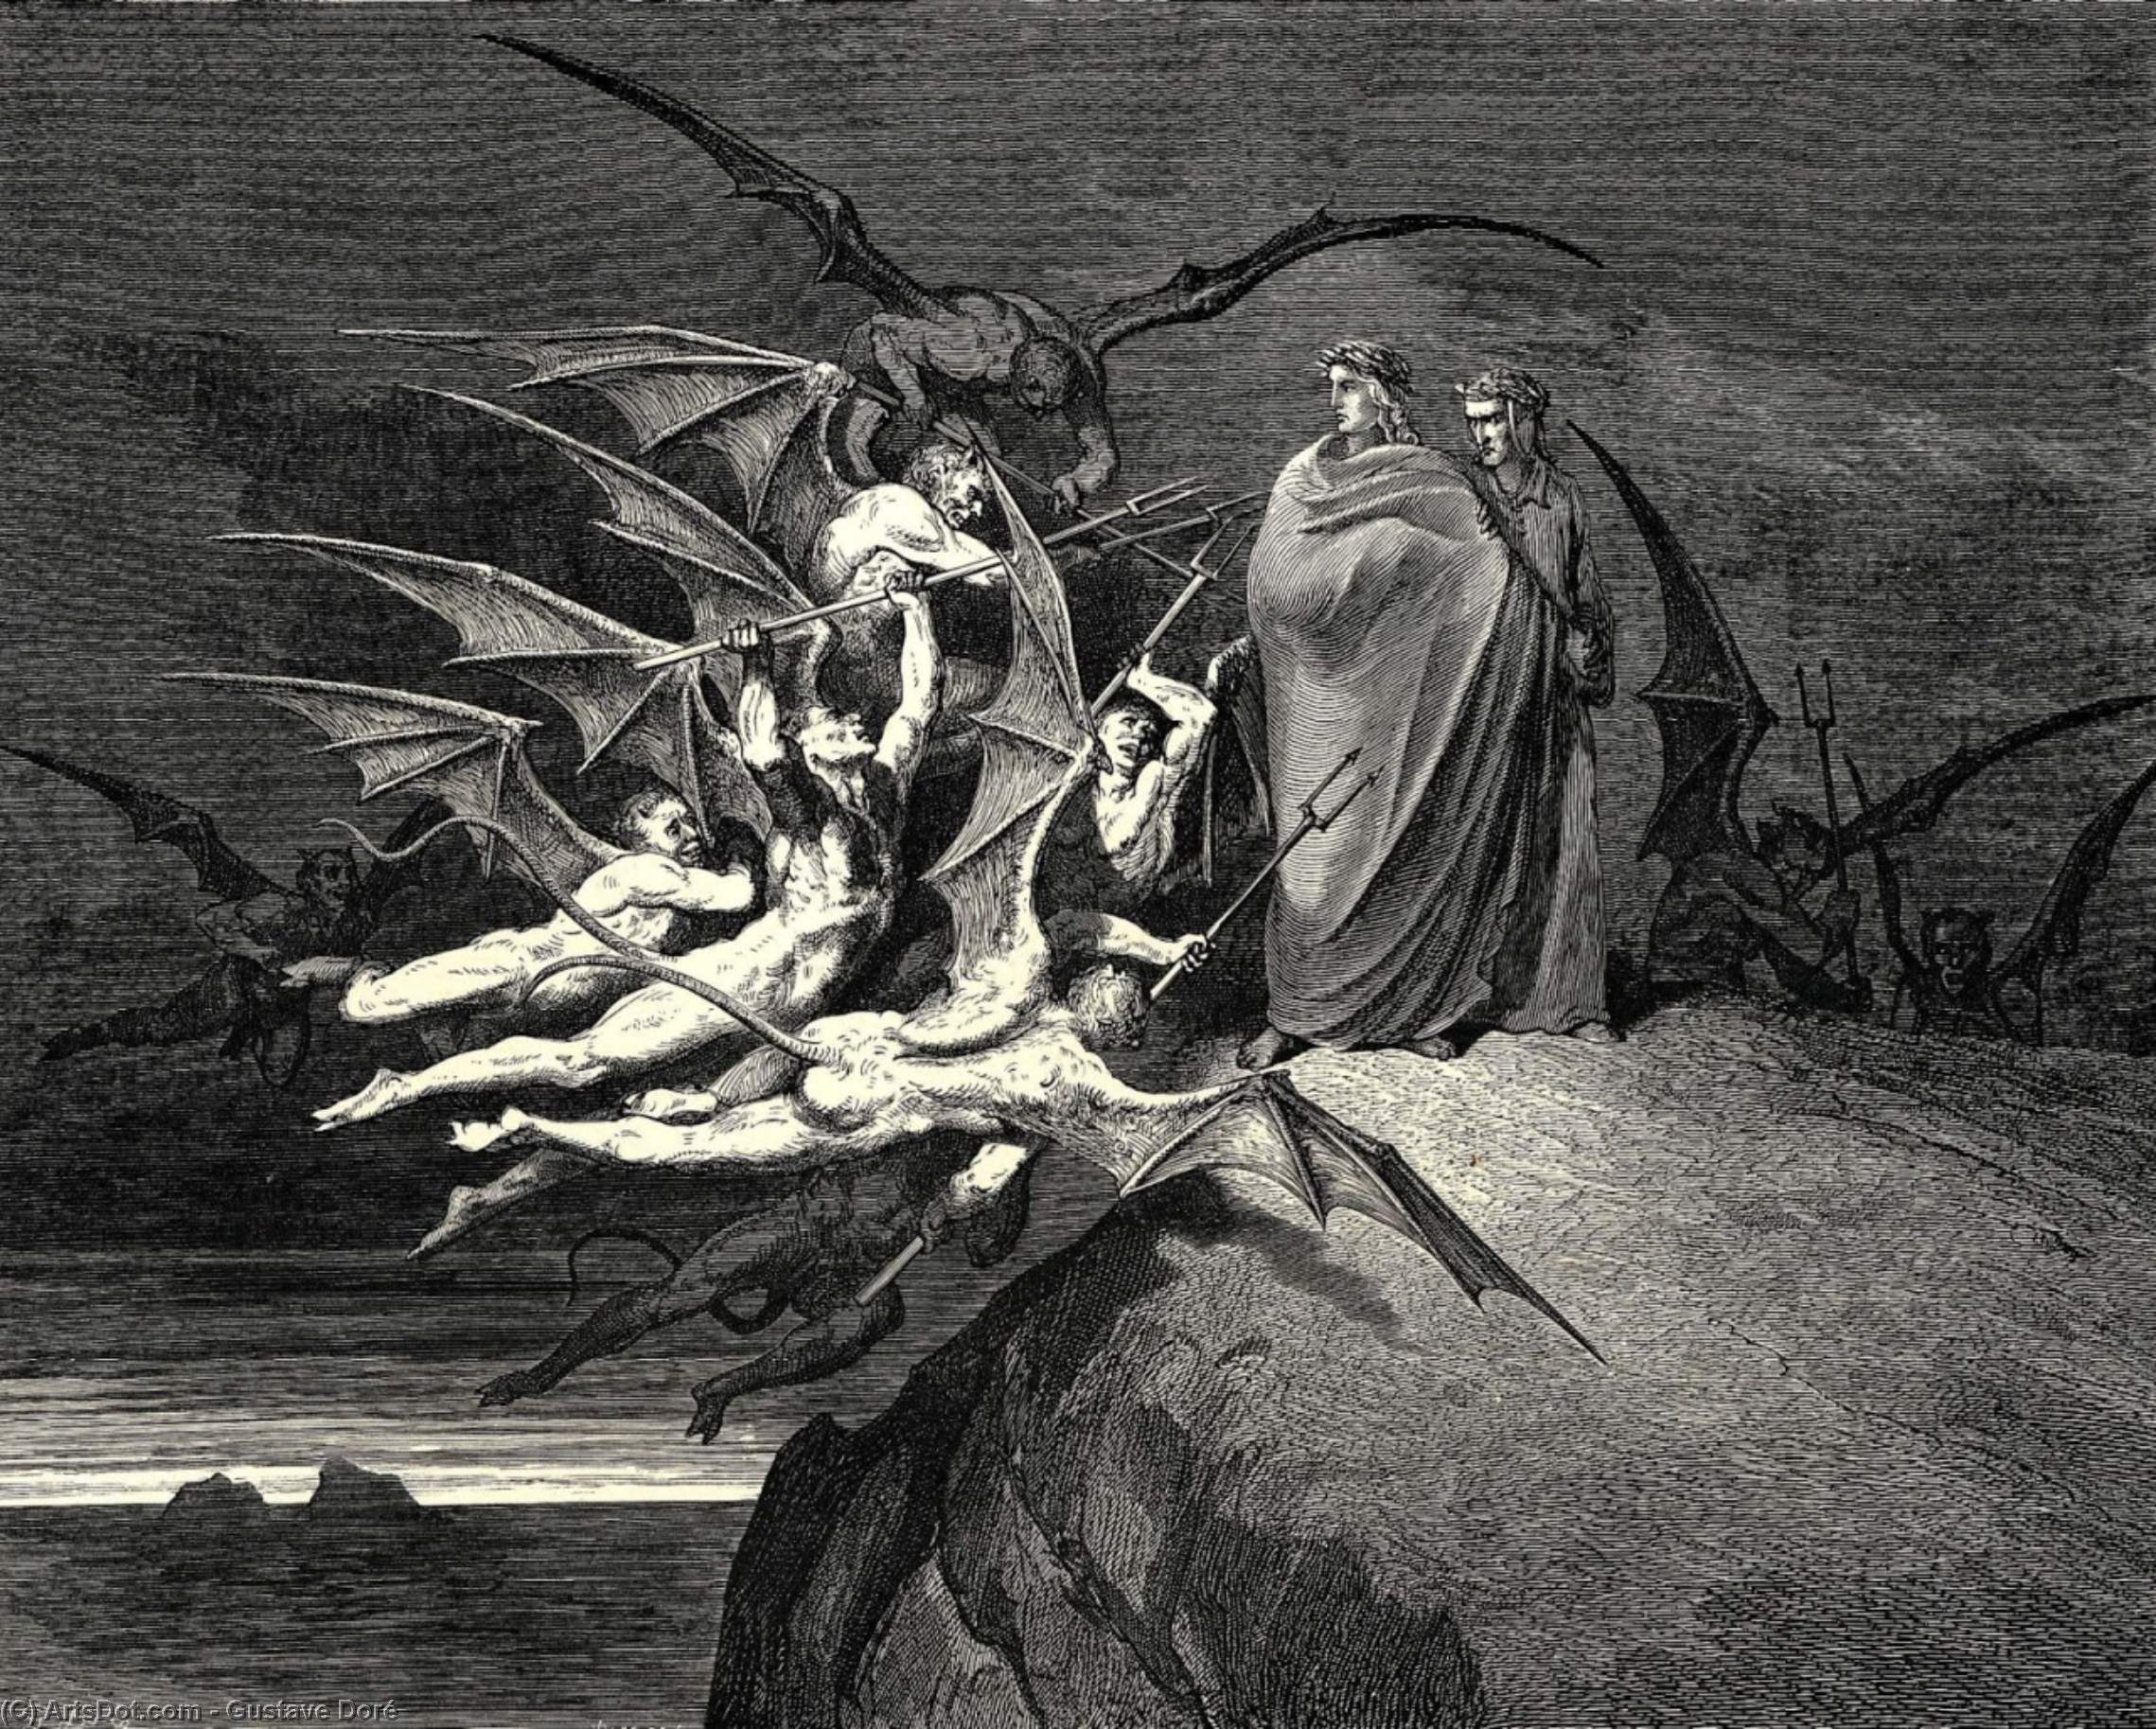 Wikioo.org - Bách khoa toàn thư về mỹ thuật - Vẽ tranh, Tác phẩm nghệ thuật Paul Gustave Doré - The Inferno, Canto 21, line 70. “Be none of you outrageous.”